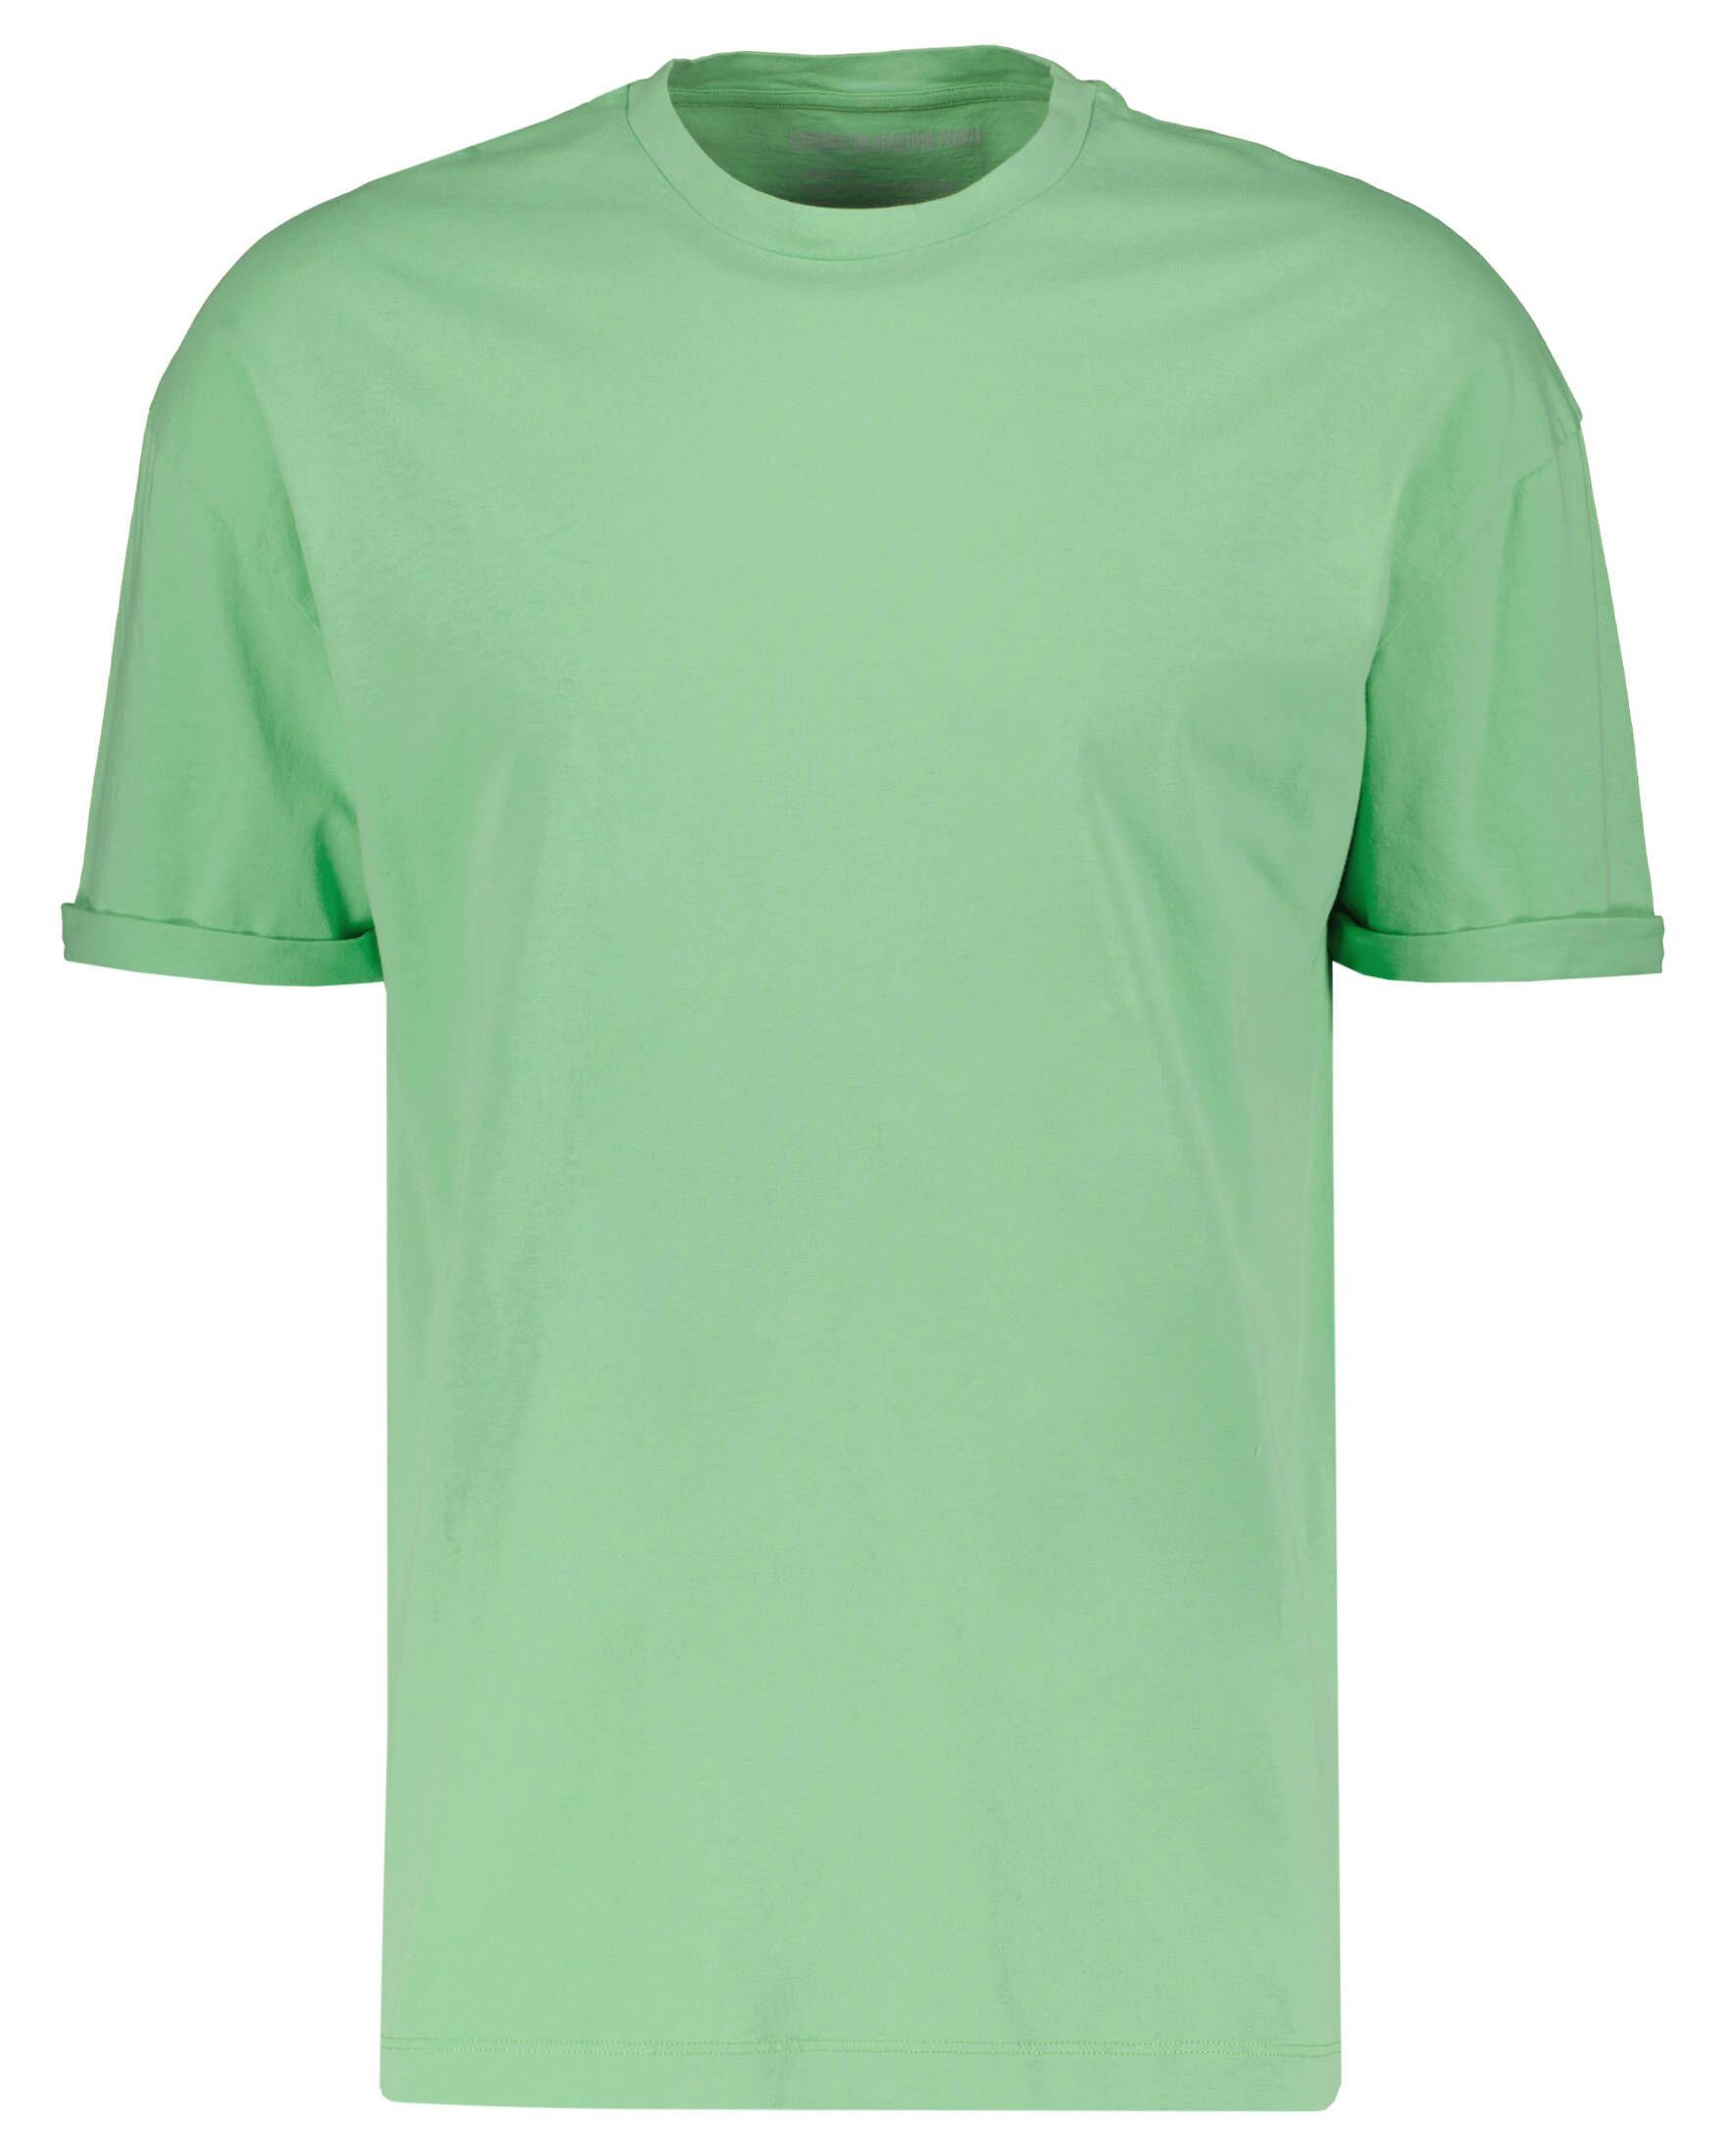 grün T-Shirt Herren (43) Drykorn T-Shirt (1-tlg)